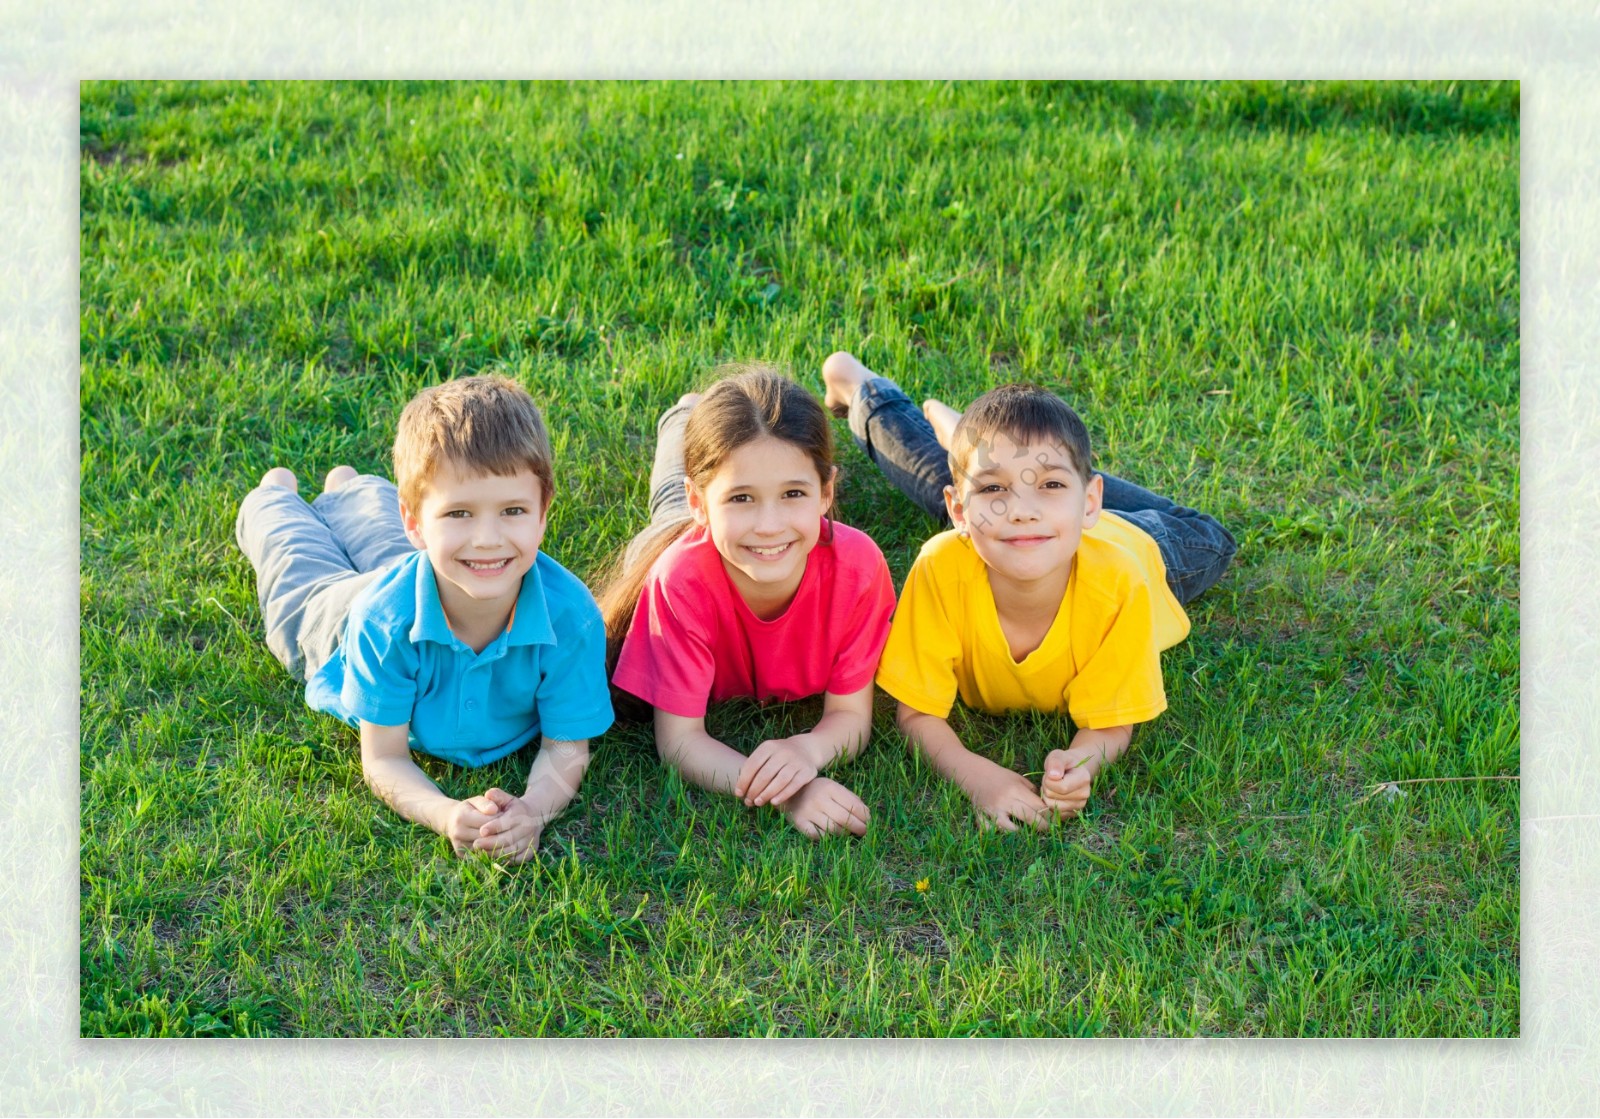 趴在草地上的三个小孩图片